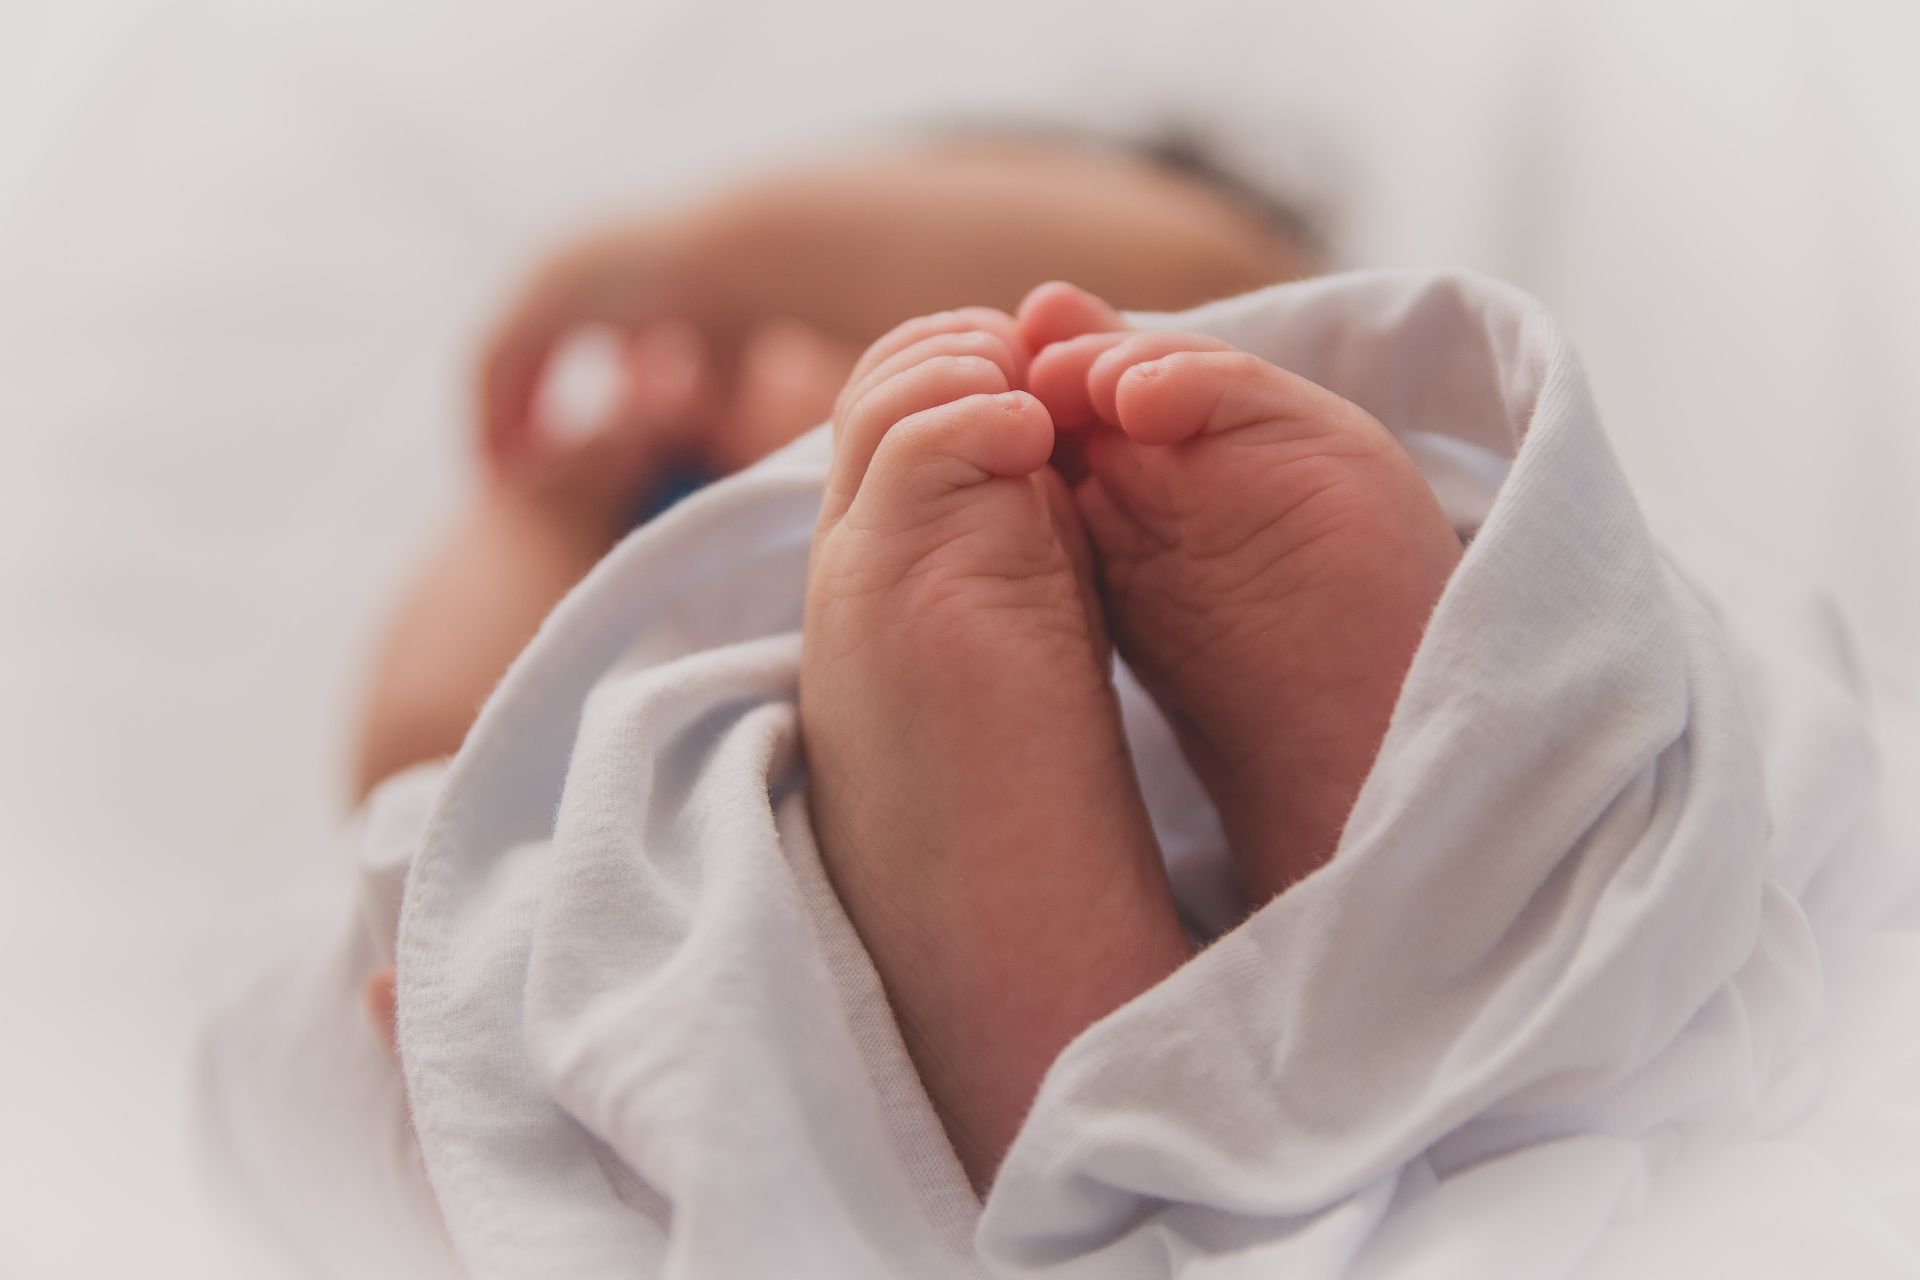 Asociația Prematurilor: recorduri negative privind natalitatea